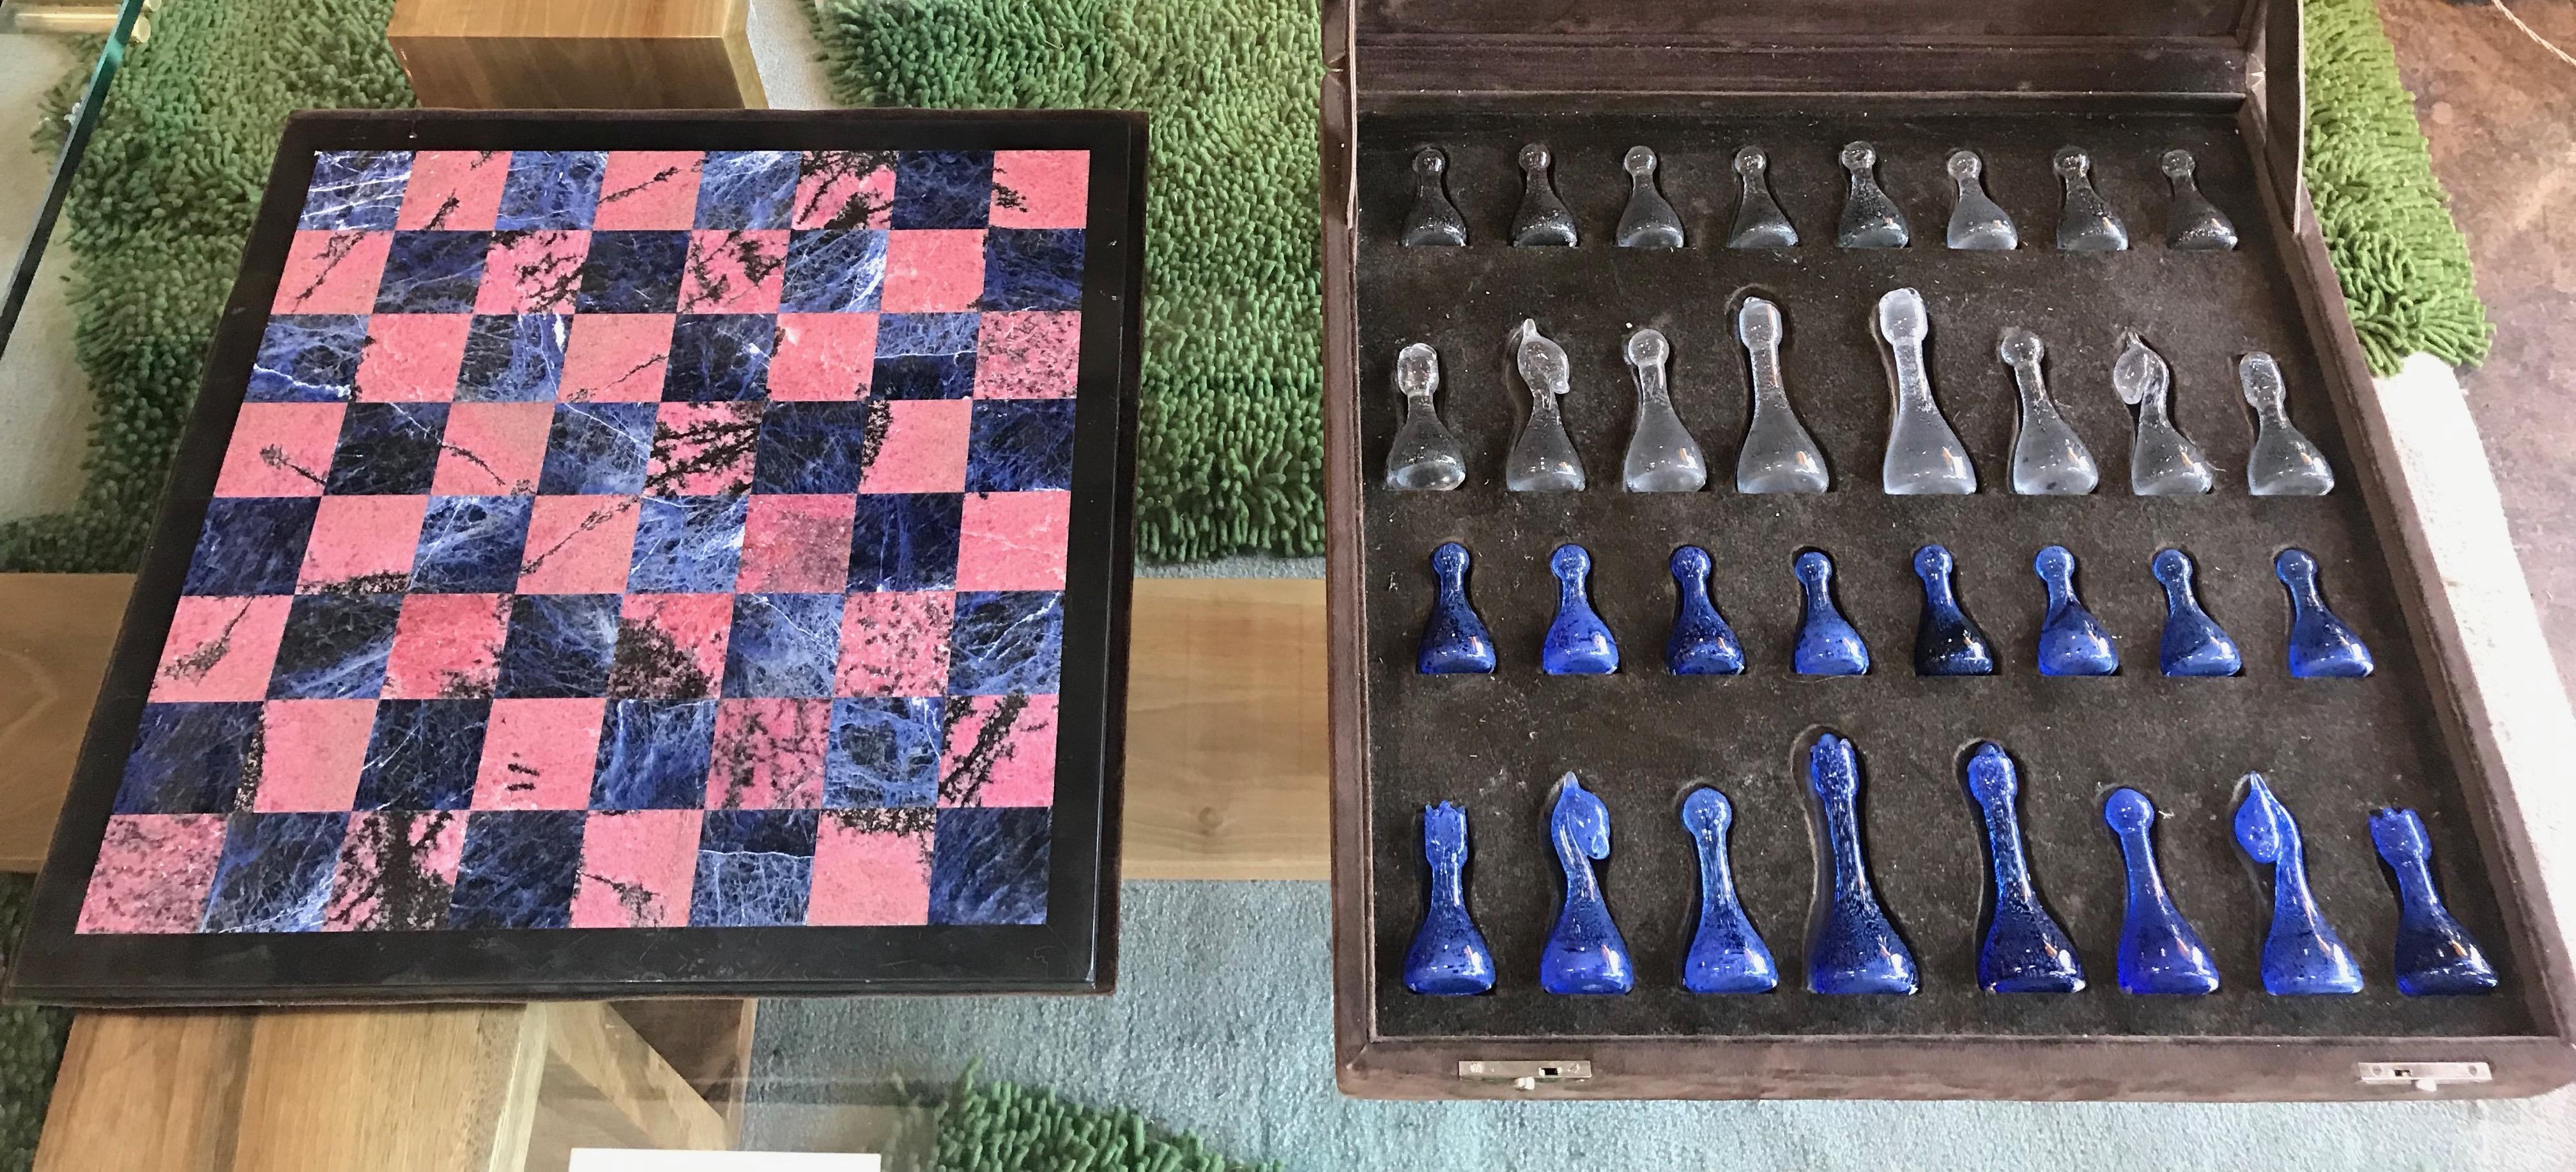 Jeu d'échecs italien en marbre et verre d'art, vers les années 1960, Italie. Le plateau de jeu est composé de marbres bleus rares, de couleur blanche et d'un mélange de marbre blanc/bleu/gris.
Les pièces du jeu sont en verre d'art fait à la main.